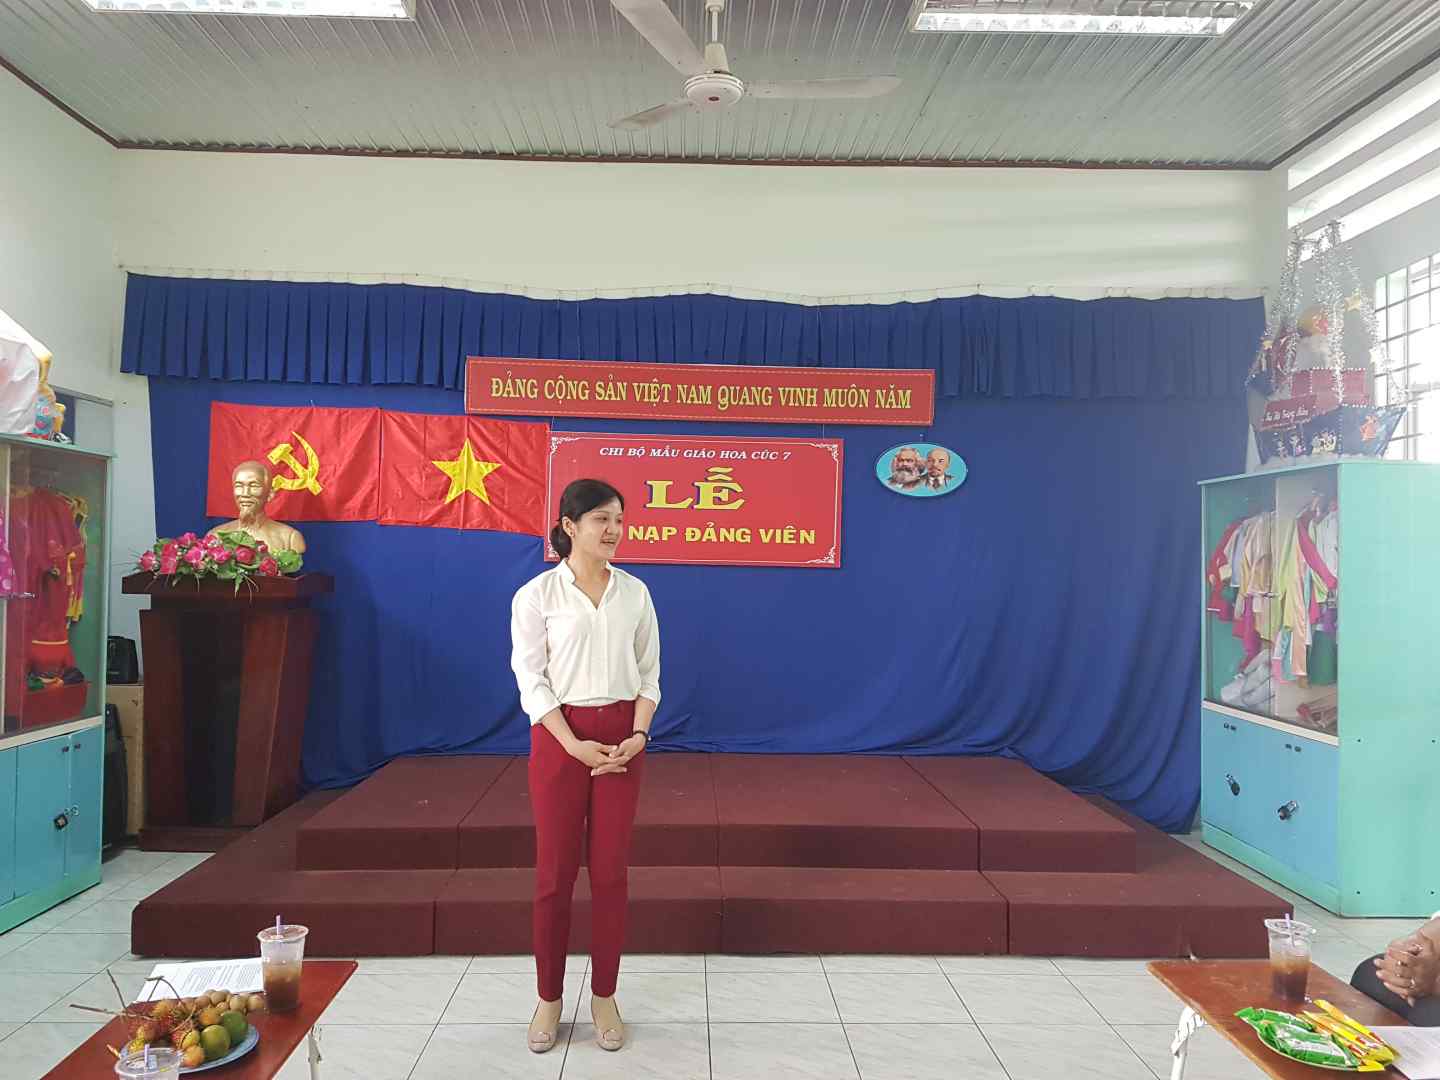 Đồng chí Trần Thị Minh Hải - Đảng ủy viên, đại diện Ban thường vụ BCH Đảng ủy Phường Bình Hòa lên phát biểu ý kiến chỉ đạo trong buổi lễ kết nạp Đảng.